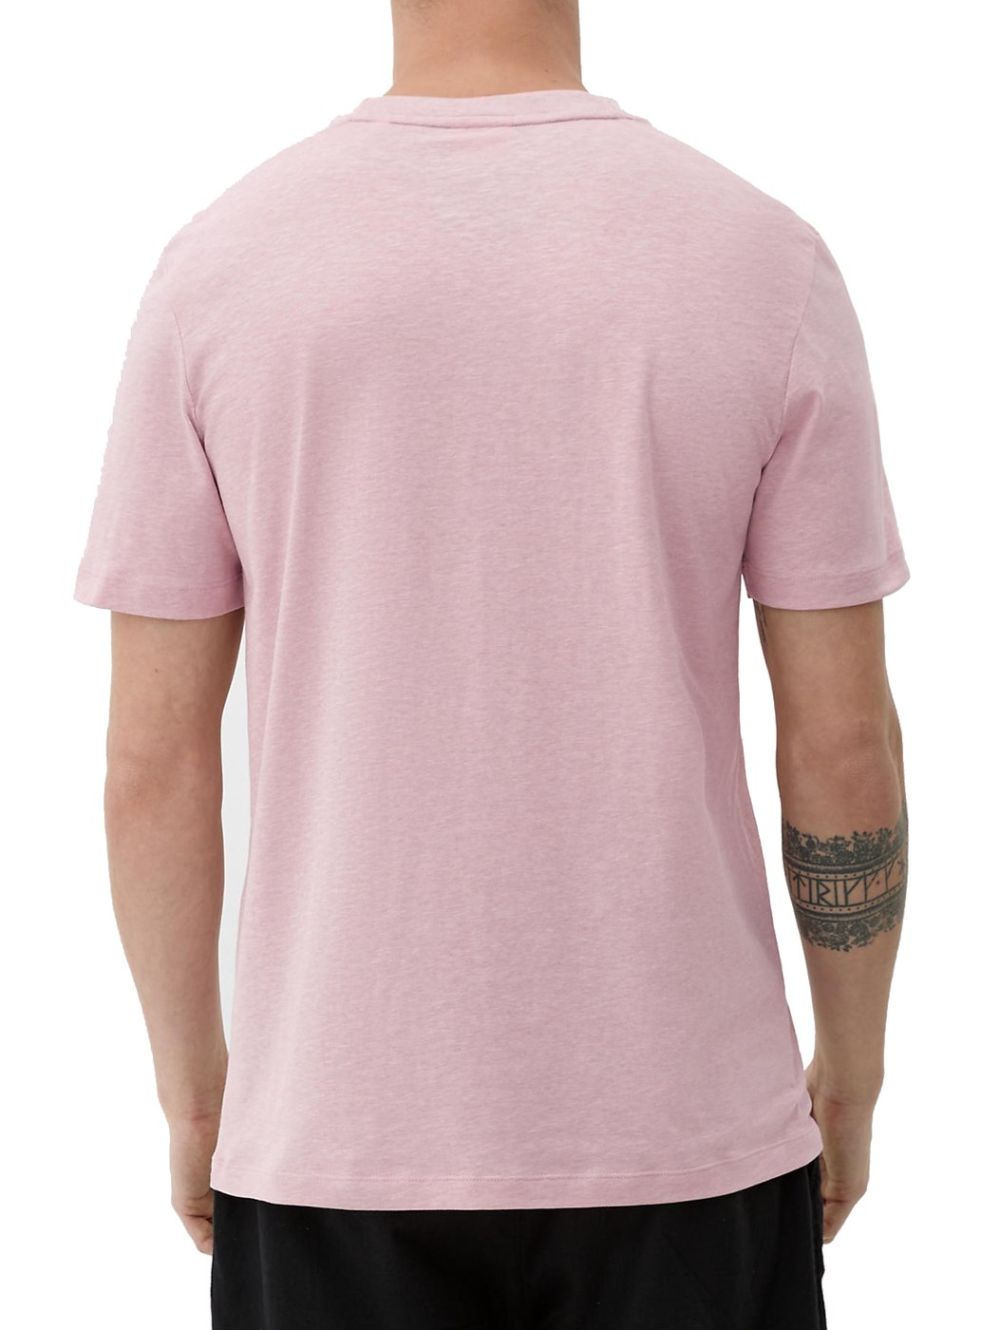 S.OLIVER Men\'s 2129852.41W2 T-Shirt Rose short-sleeved pink